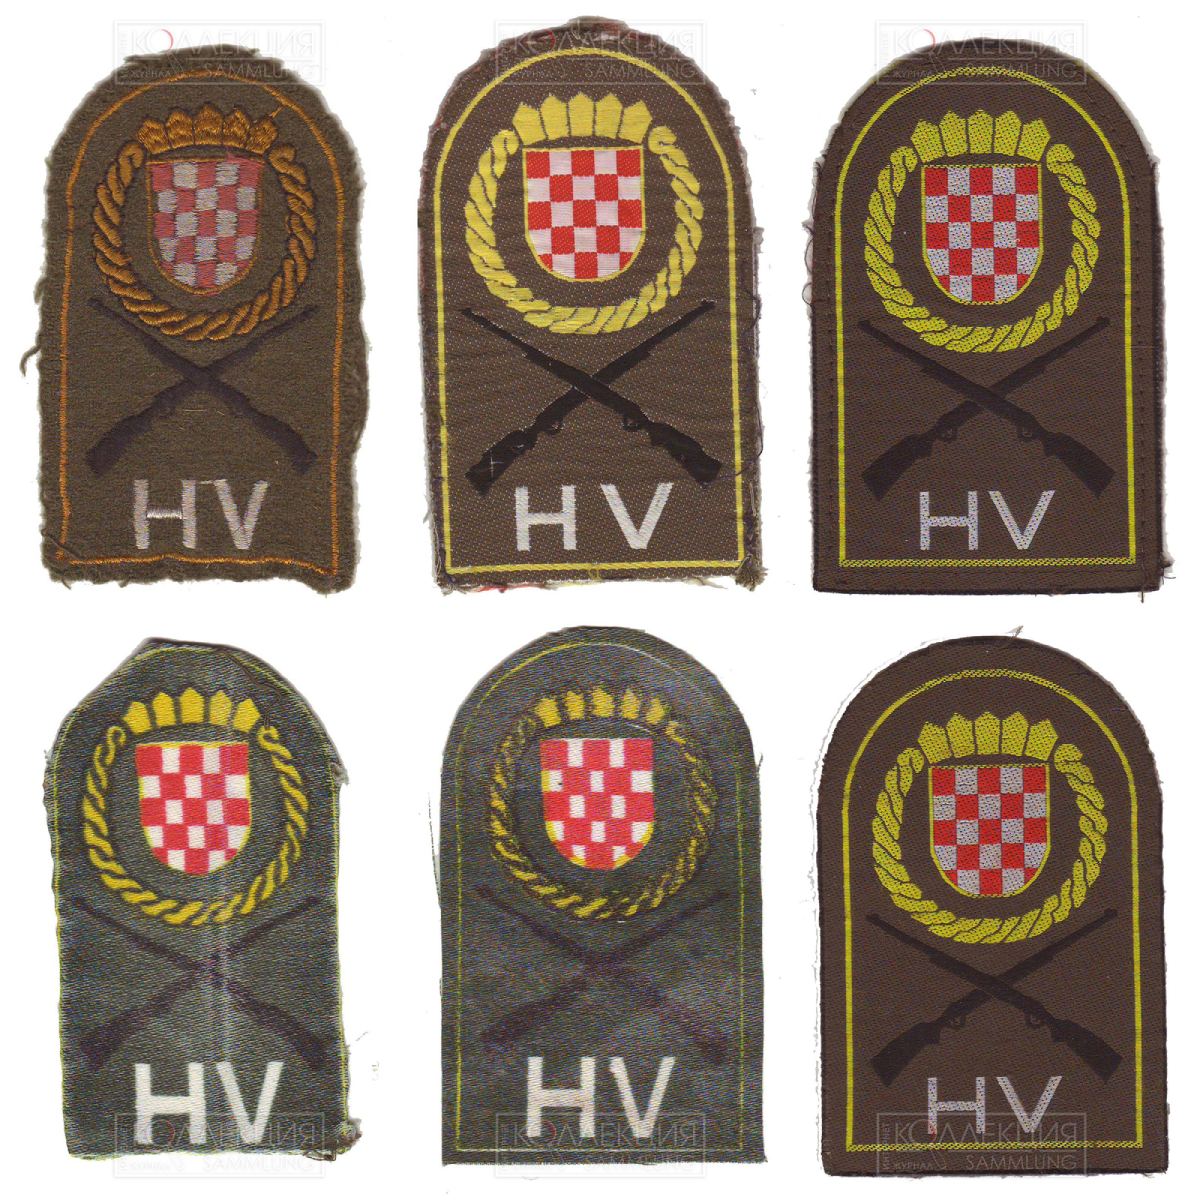 Нарукавные знаки Хорватского Войска. Тип 1 (образца 1991 года)